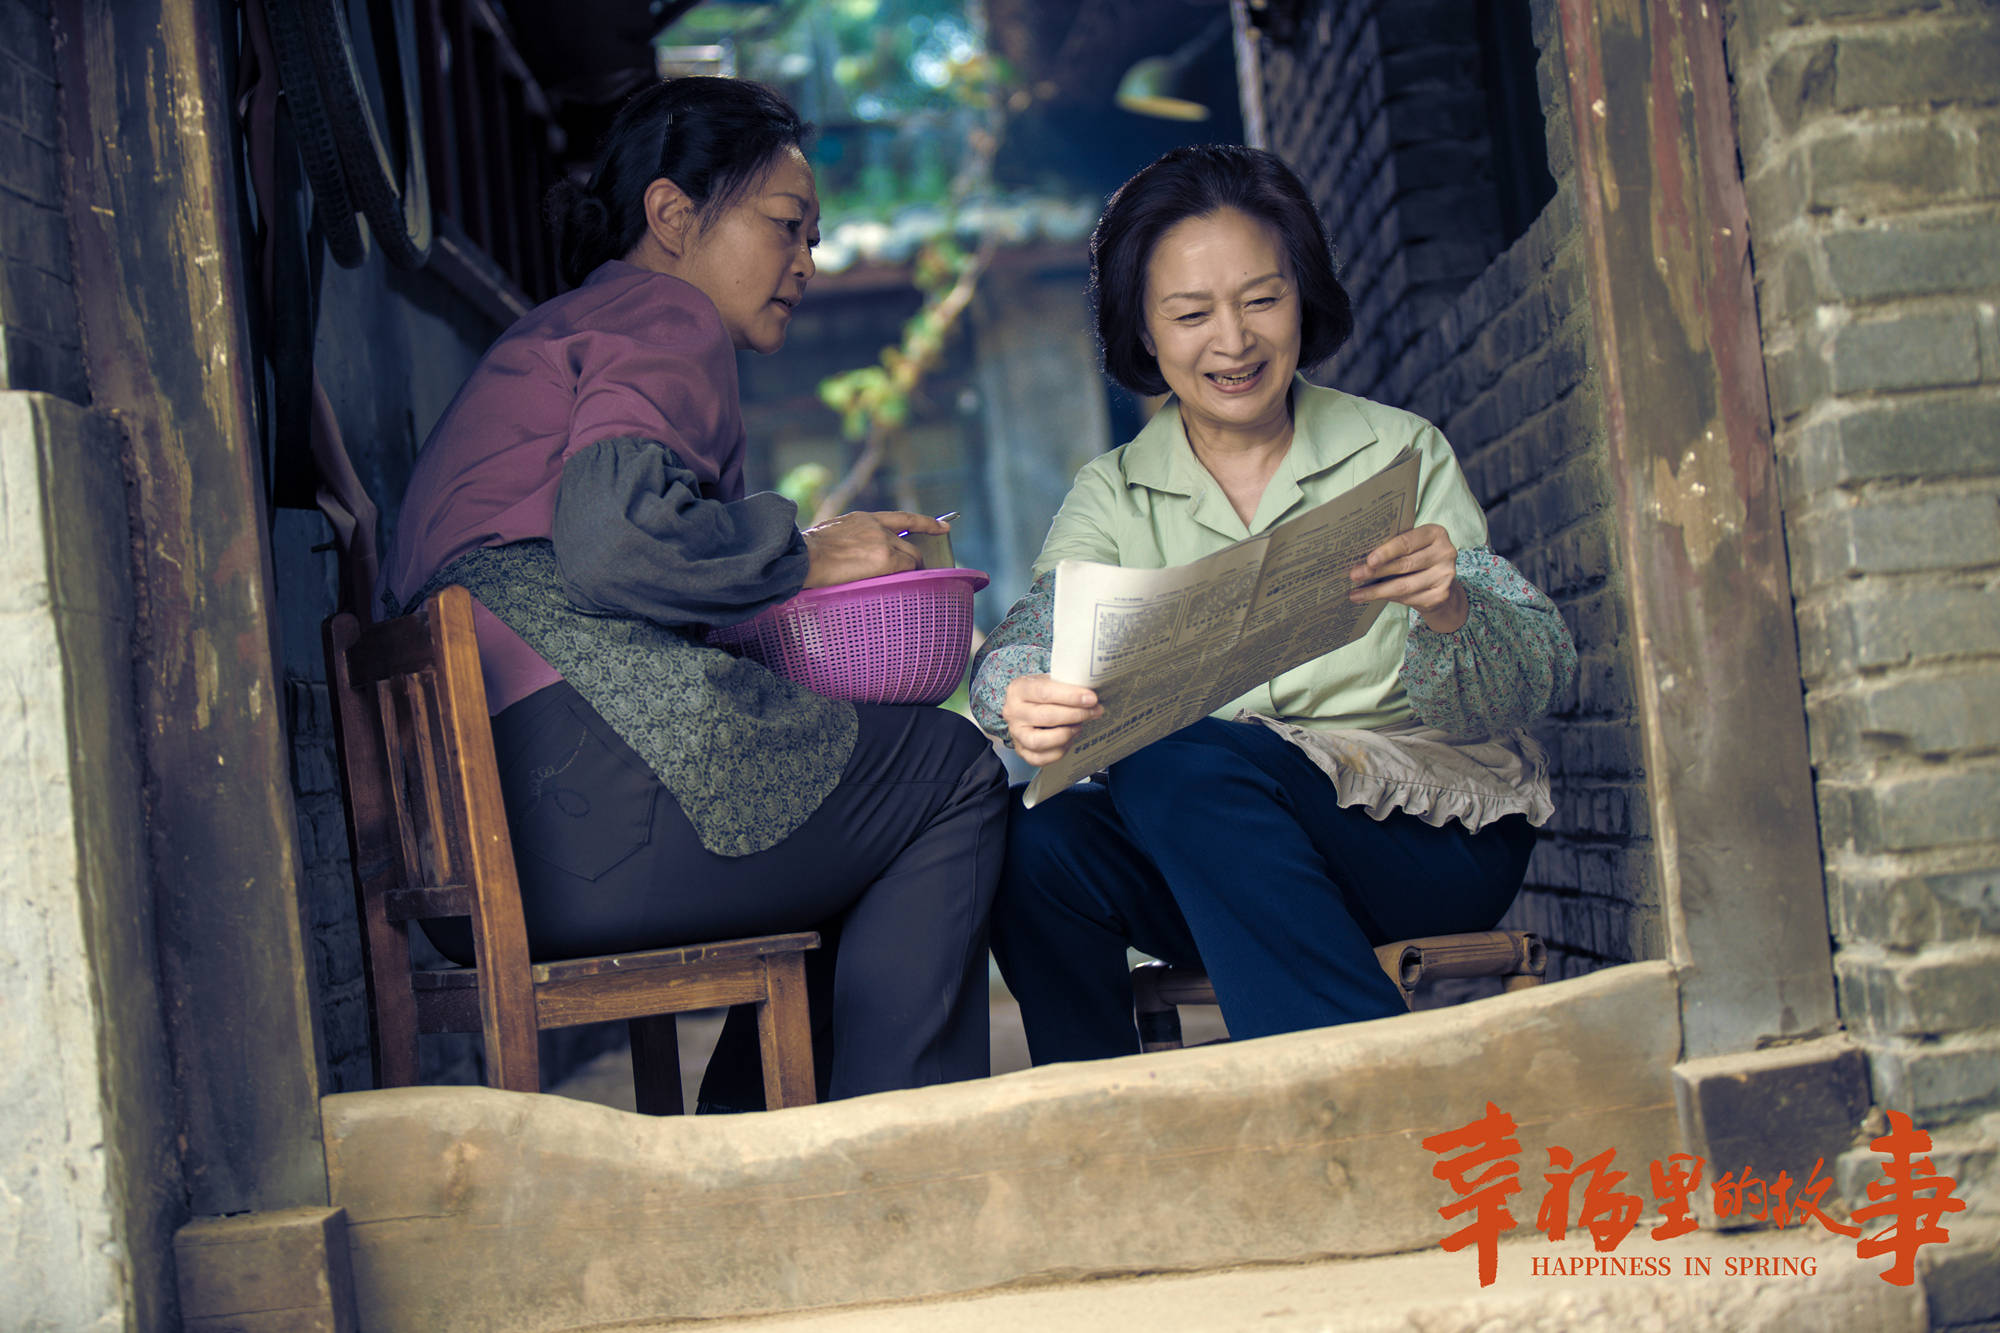 很精彩热播剧幸福里的故事讲述老北京人生活的精彩故事组图